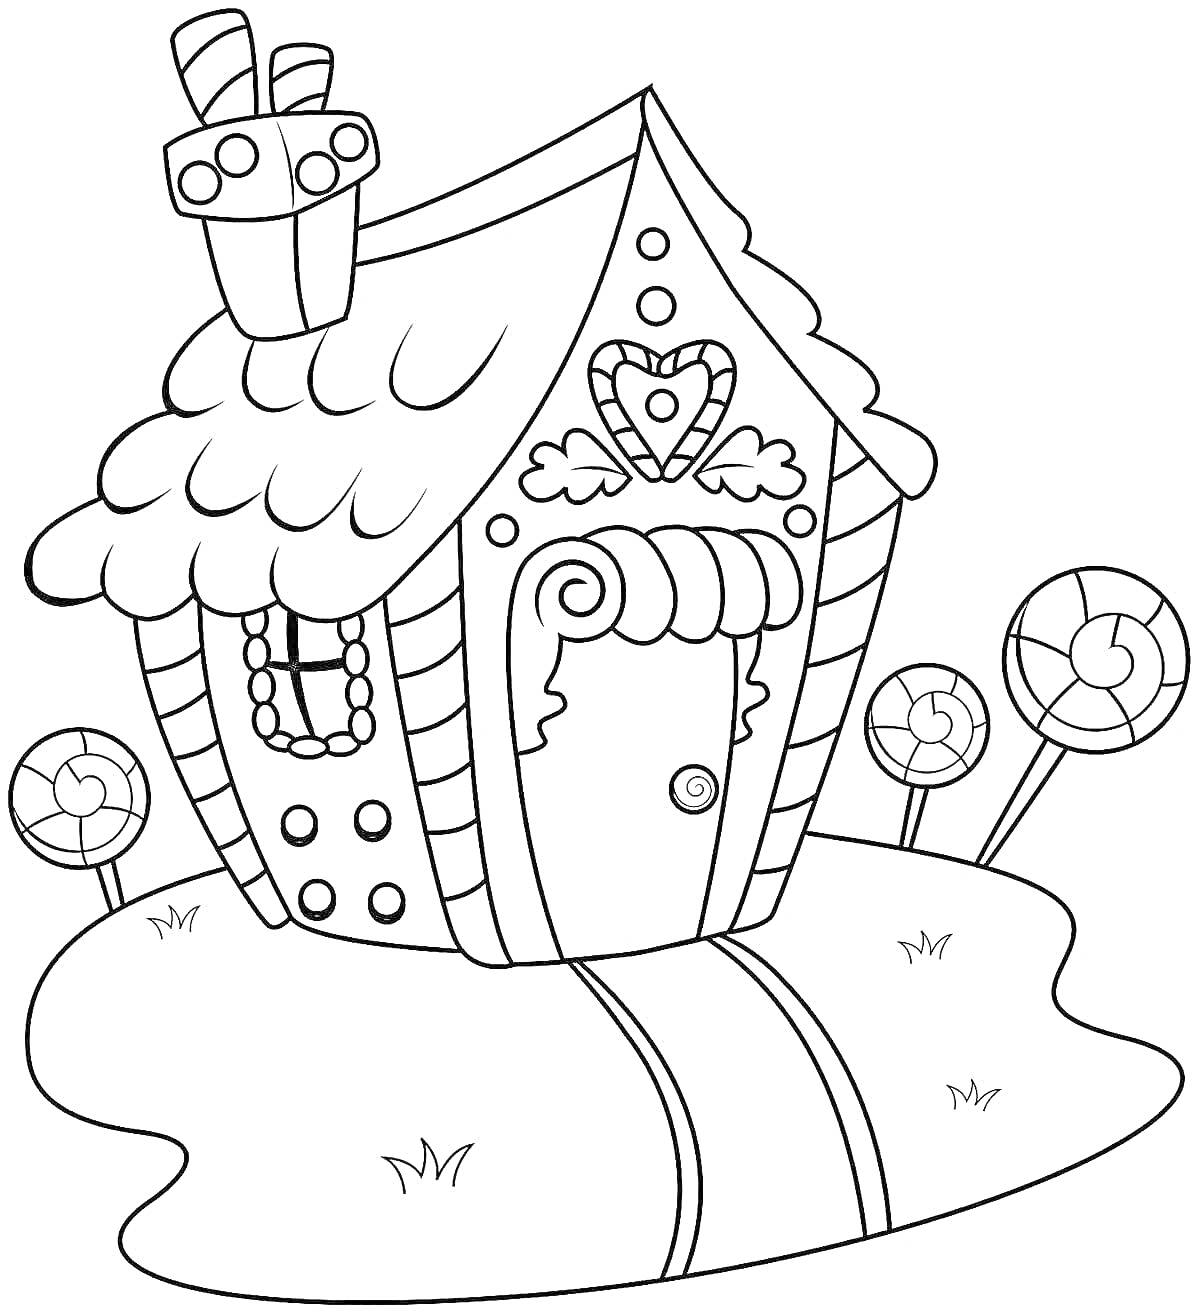 Раскраска Пряничный домик с конфетами и леденцами на лужайке